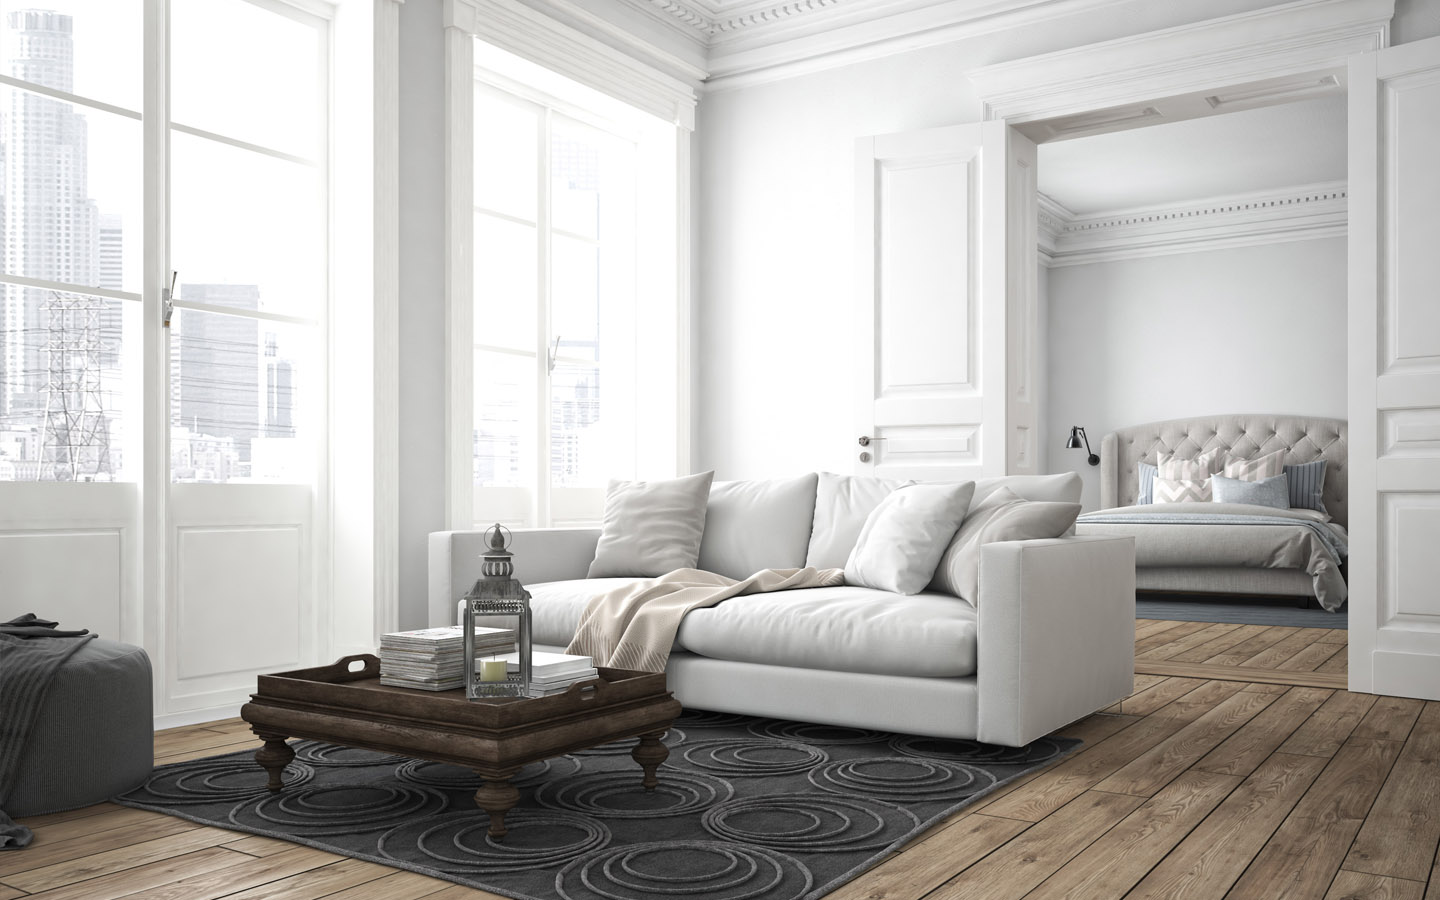 living room floor designs